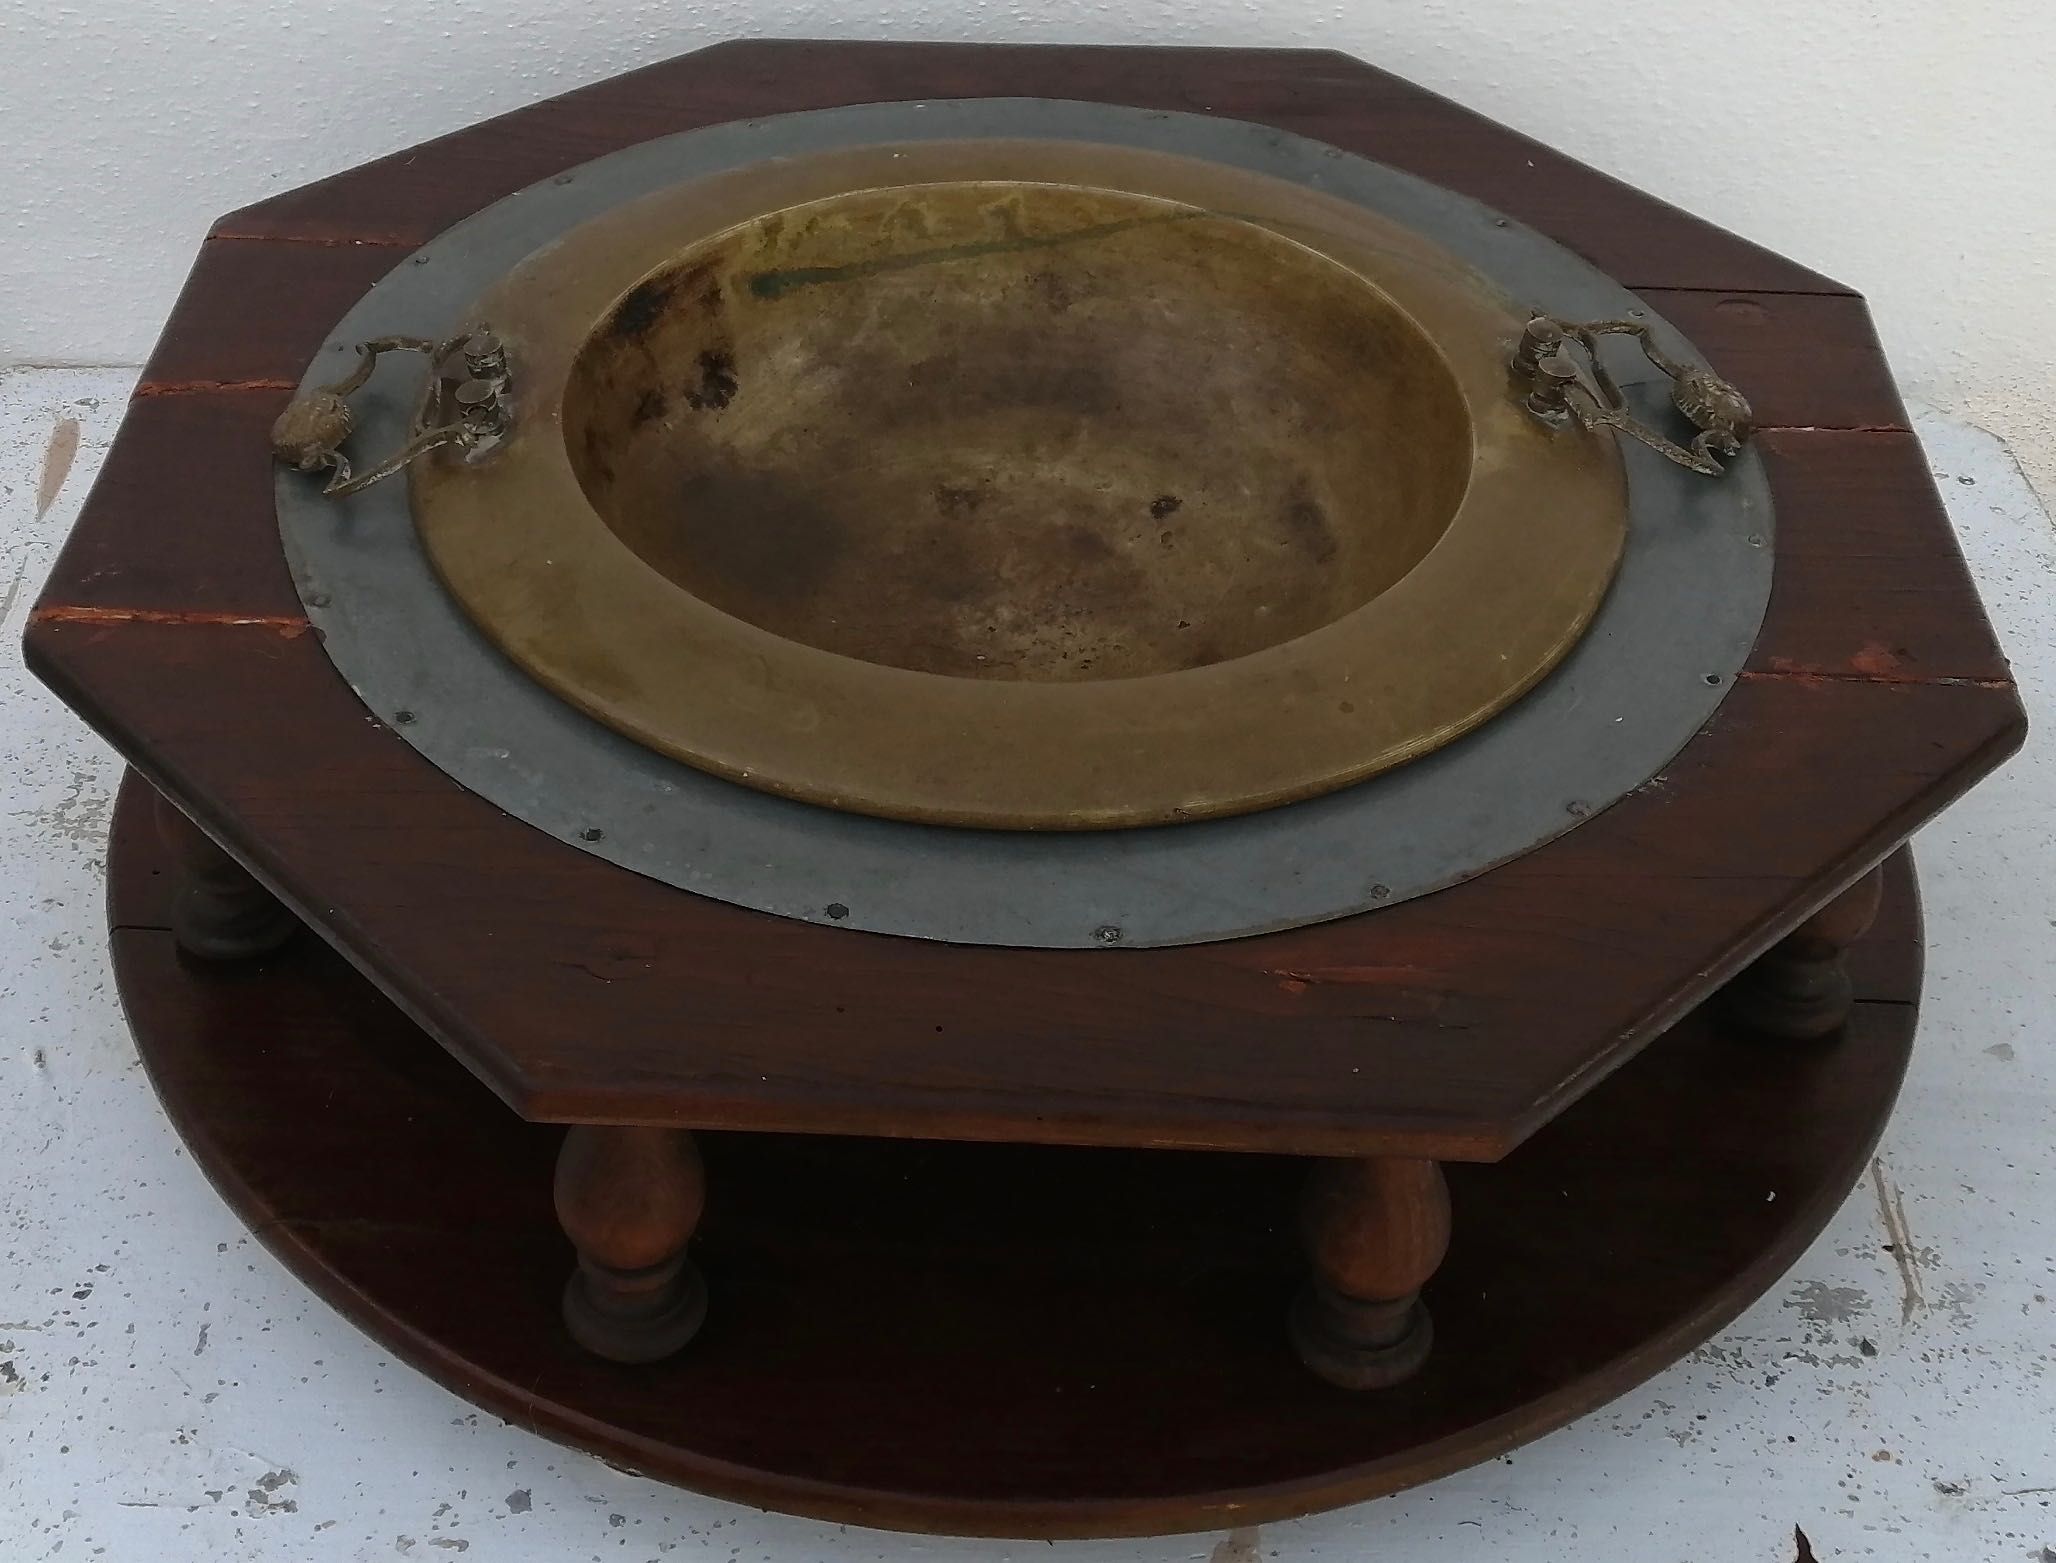 braseira em cobre com suporte de madeira octangular